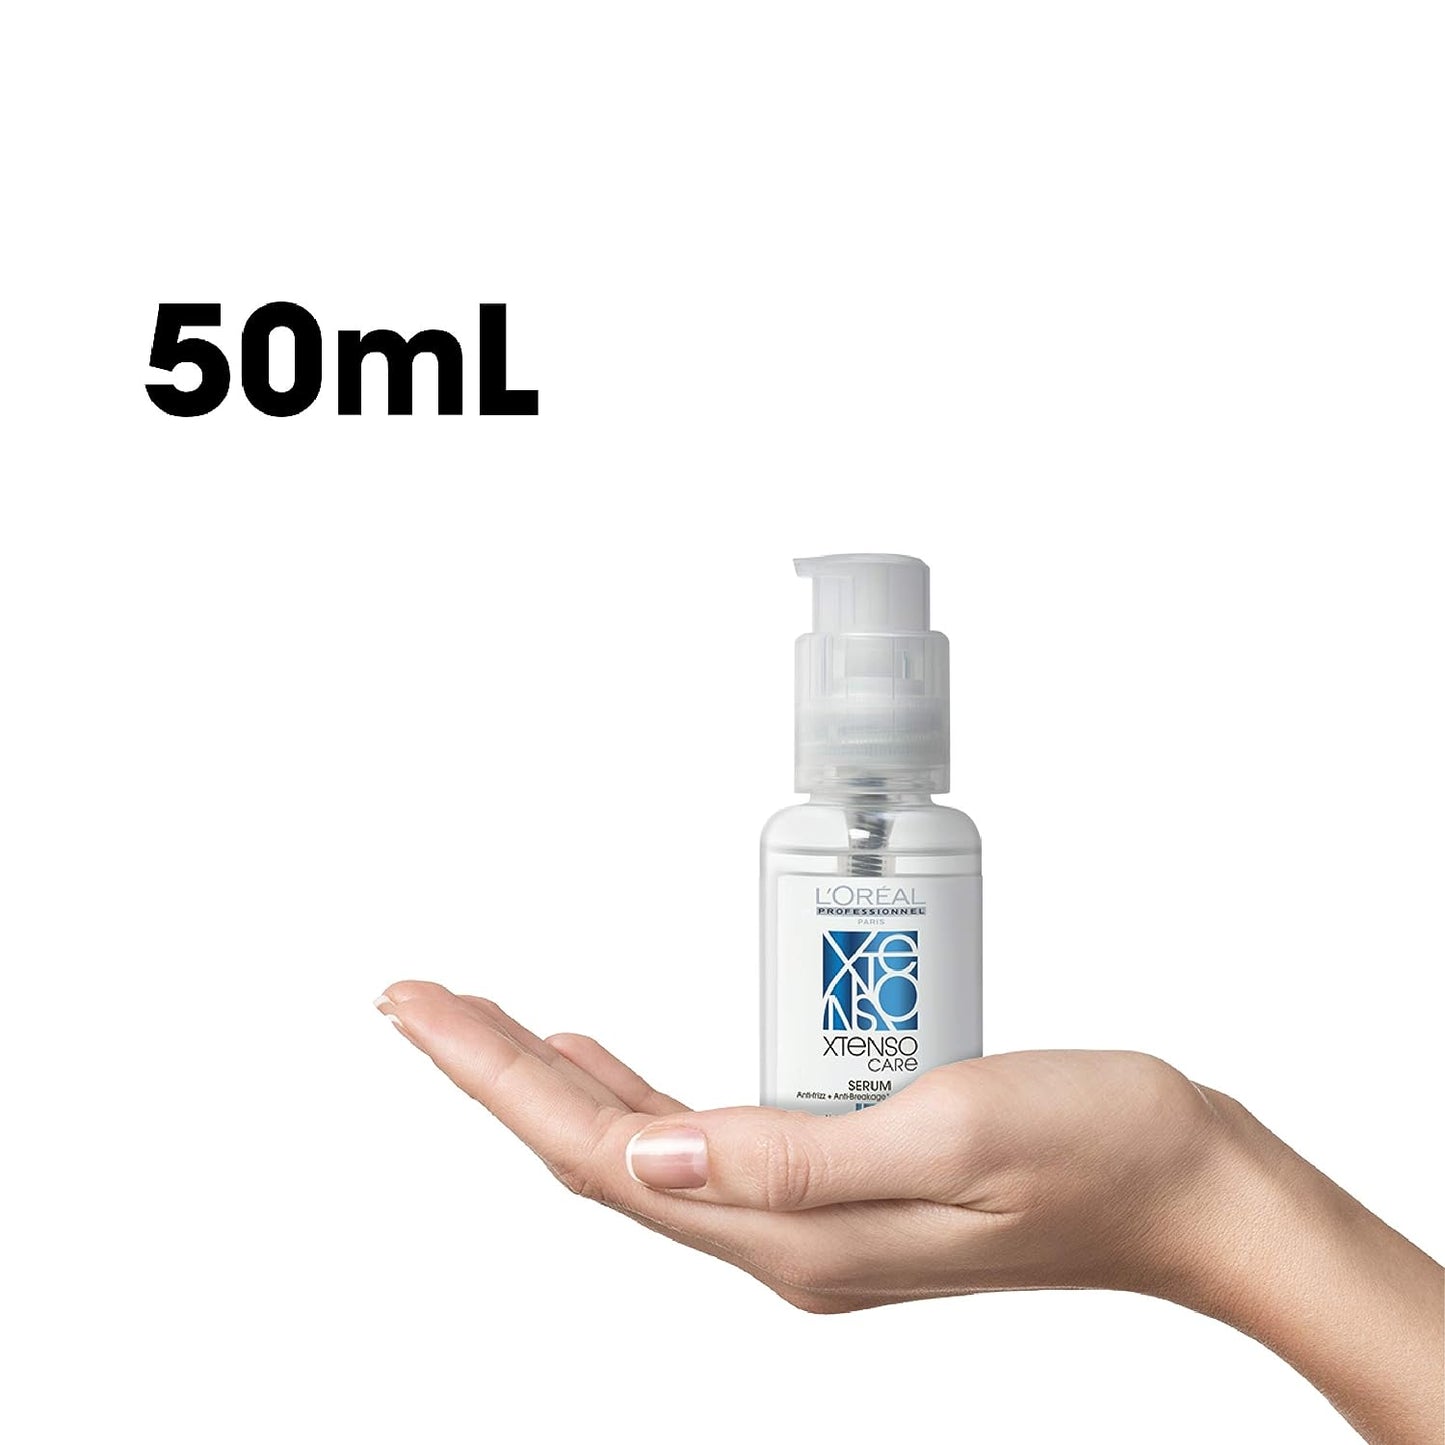 L'Oréal Professionnel Xtenso Care Serum, 50ml